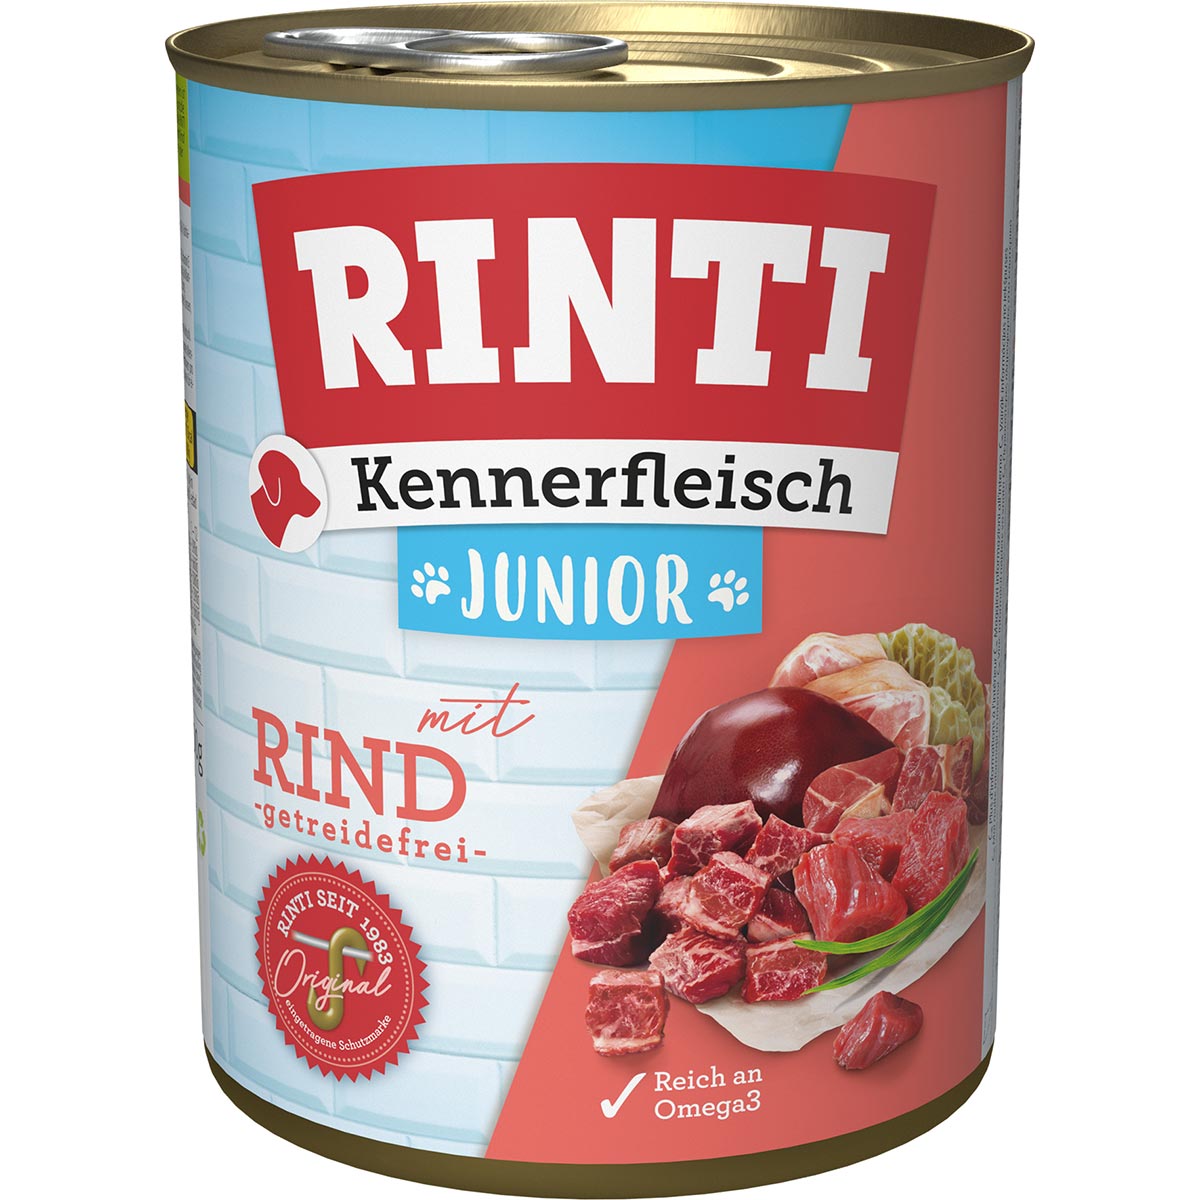 Rinti Kennerfleisch Junior mit Rind 24x800g von Rinti